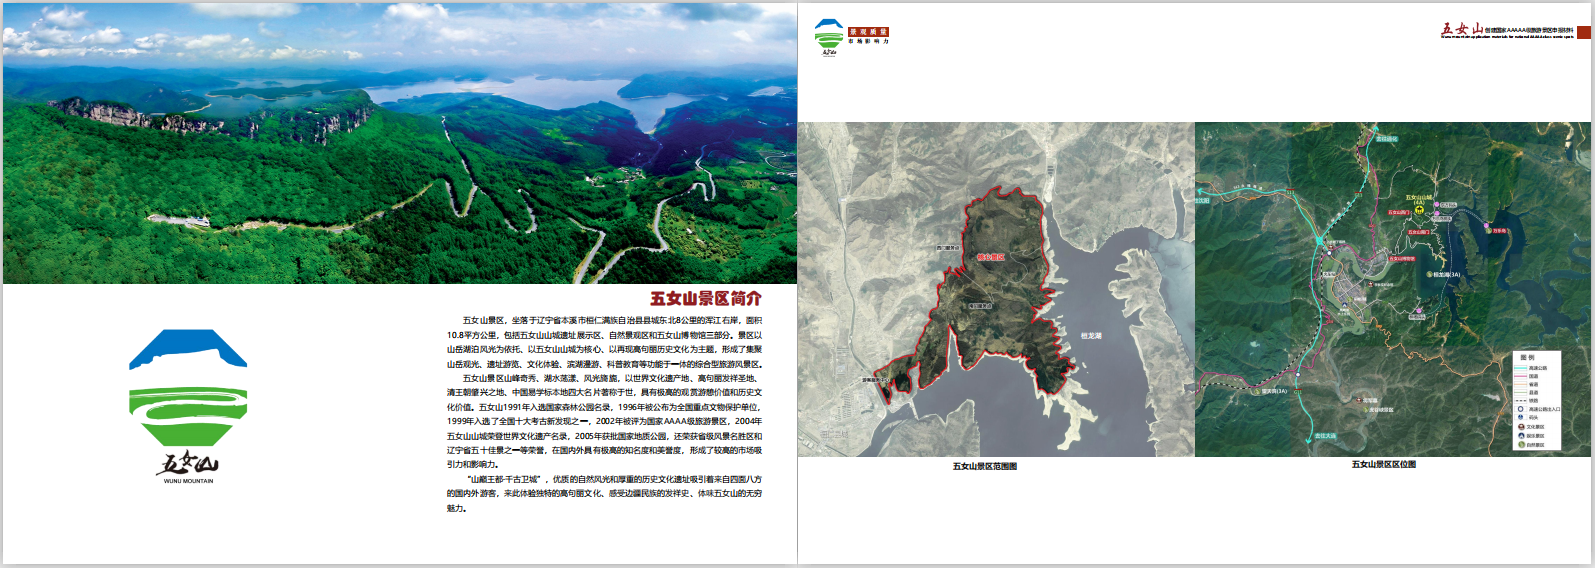 北京兴博旅投规划设计院承接辽宁五女山《创建国家5A级旅游景区景观质量评价申报材料》(图2)